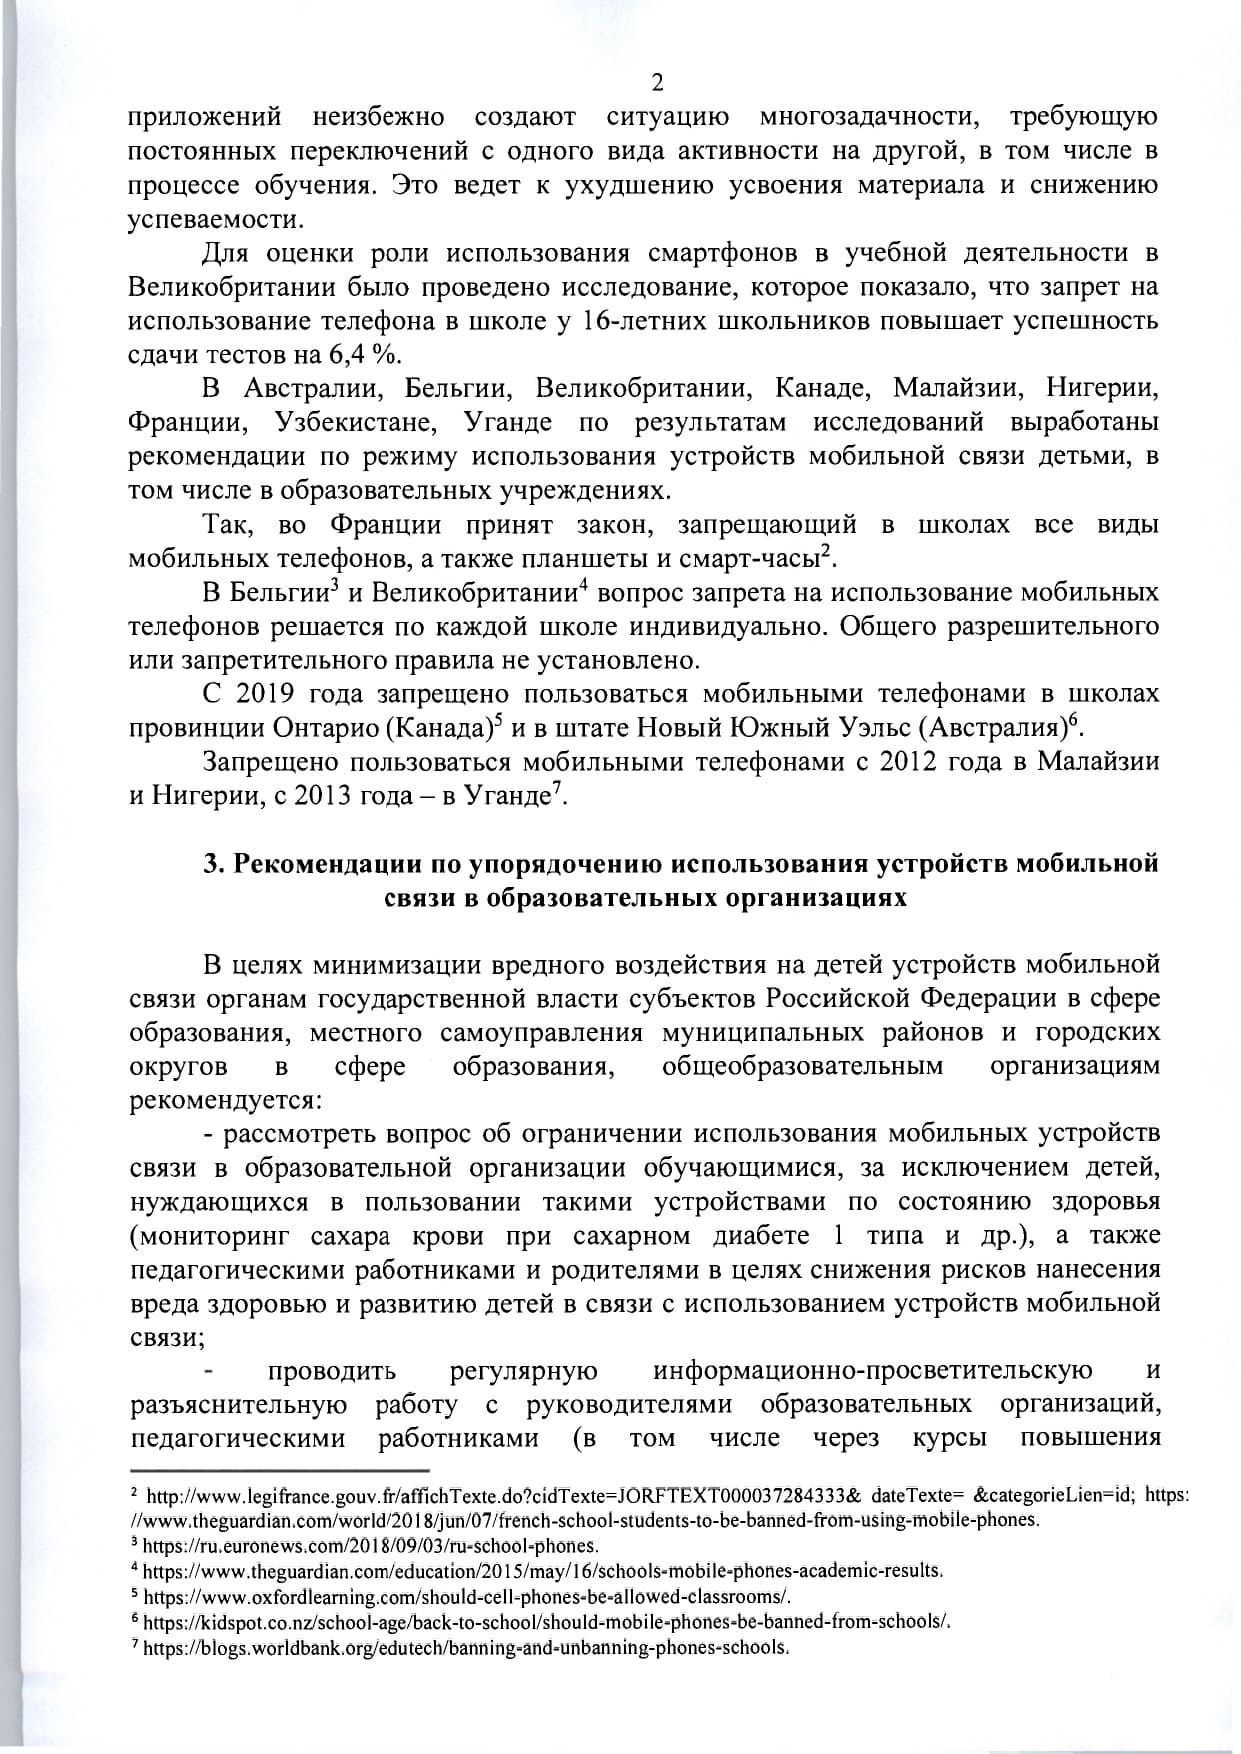 mr-telefony-v-obrazovatelnykh-org- 1  page-0004